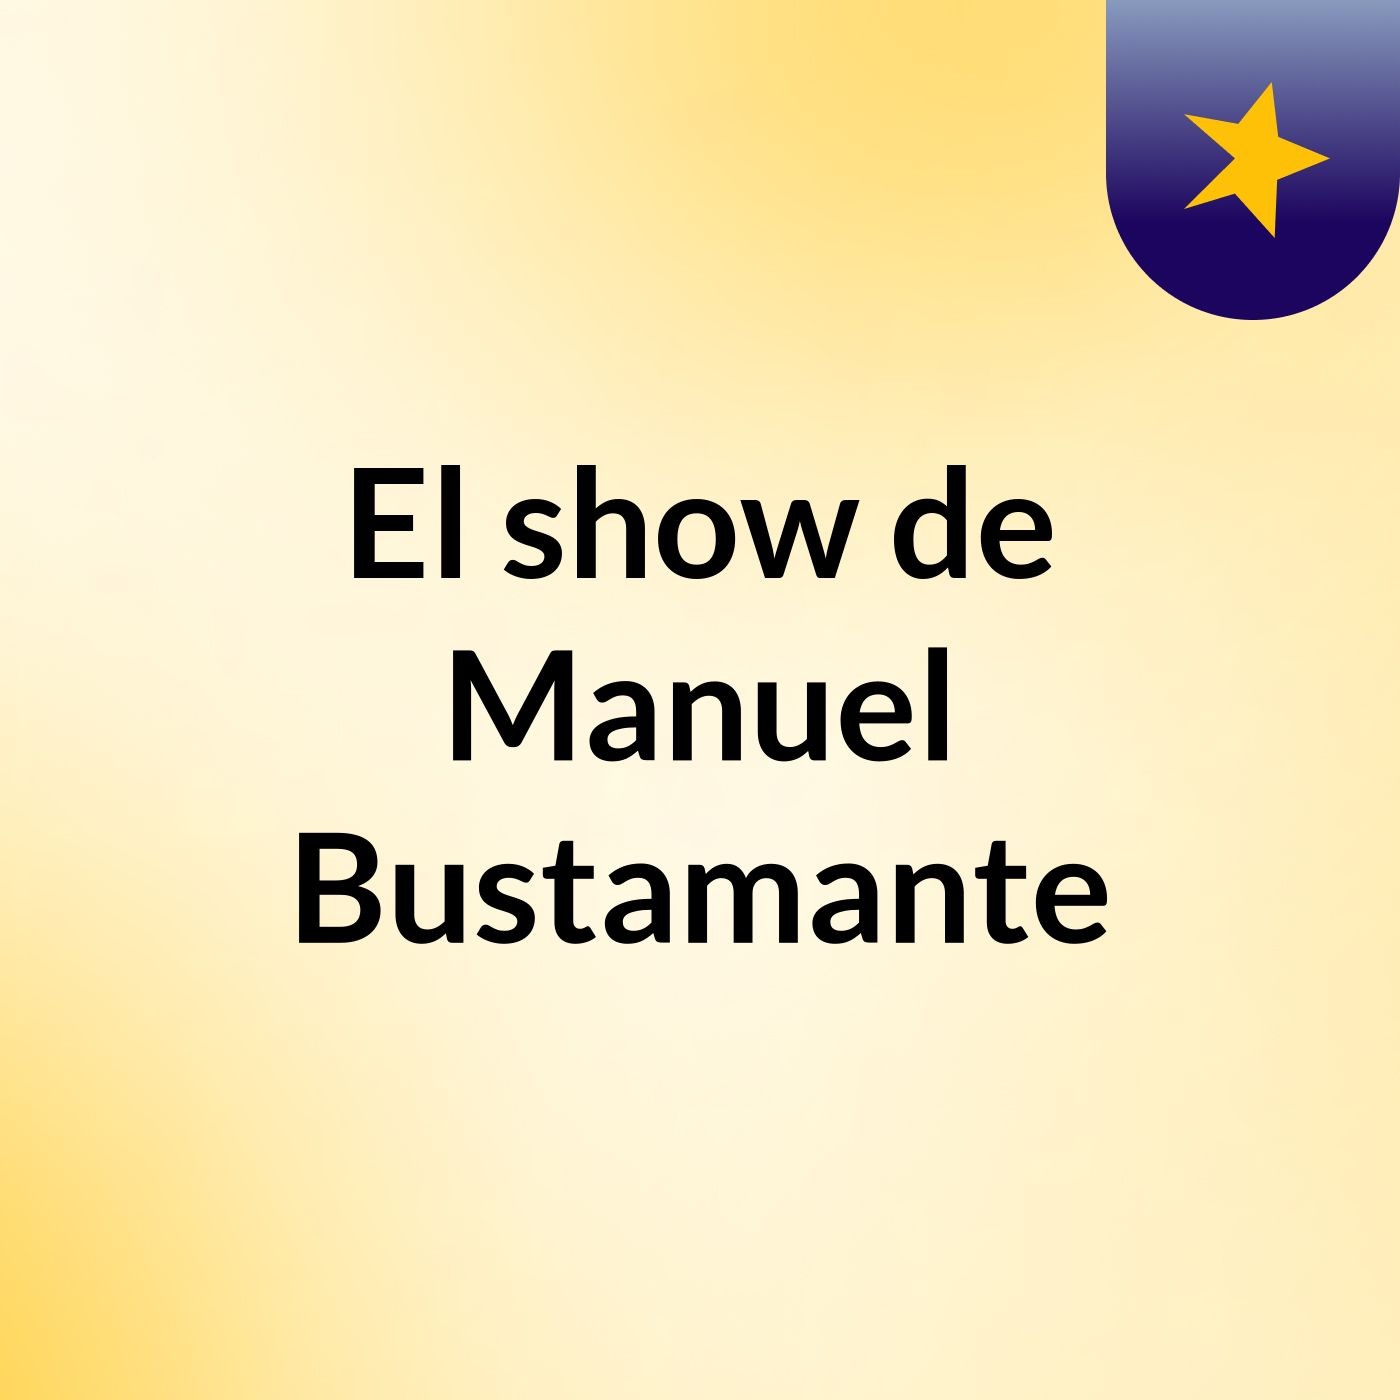 Episodio 3 - El show de Manuel Bustamante